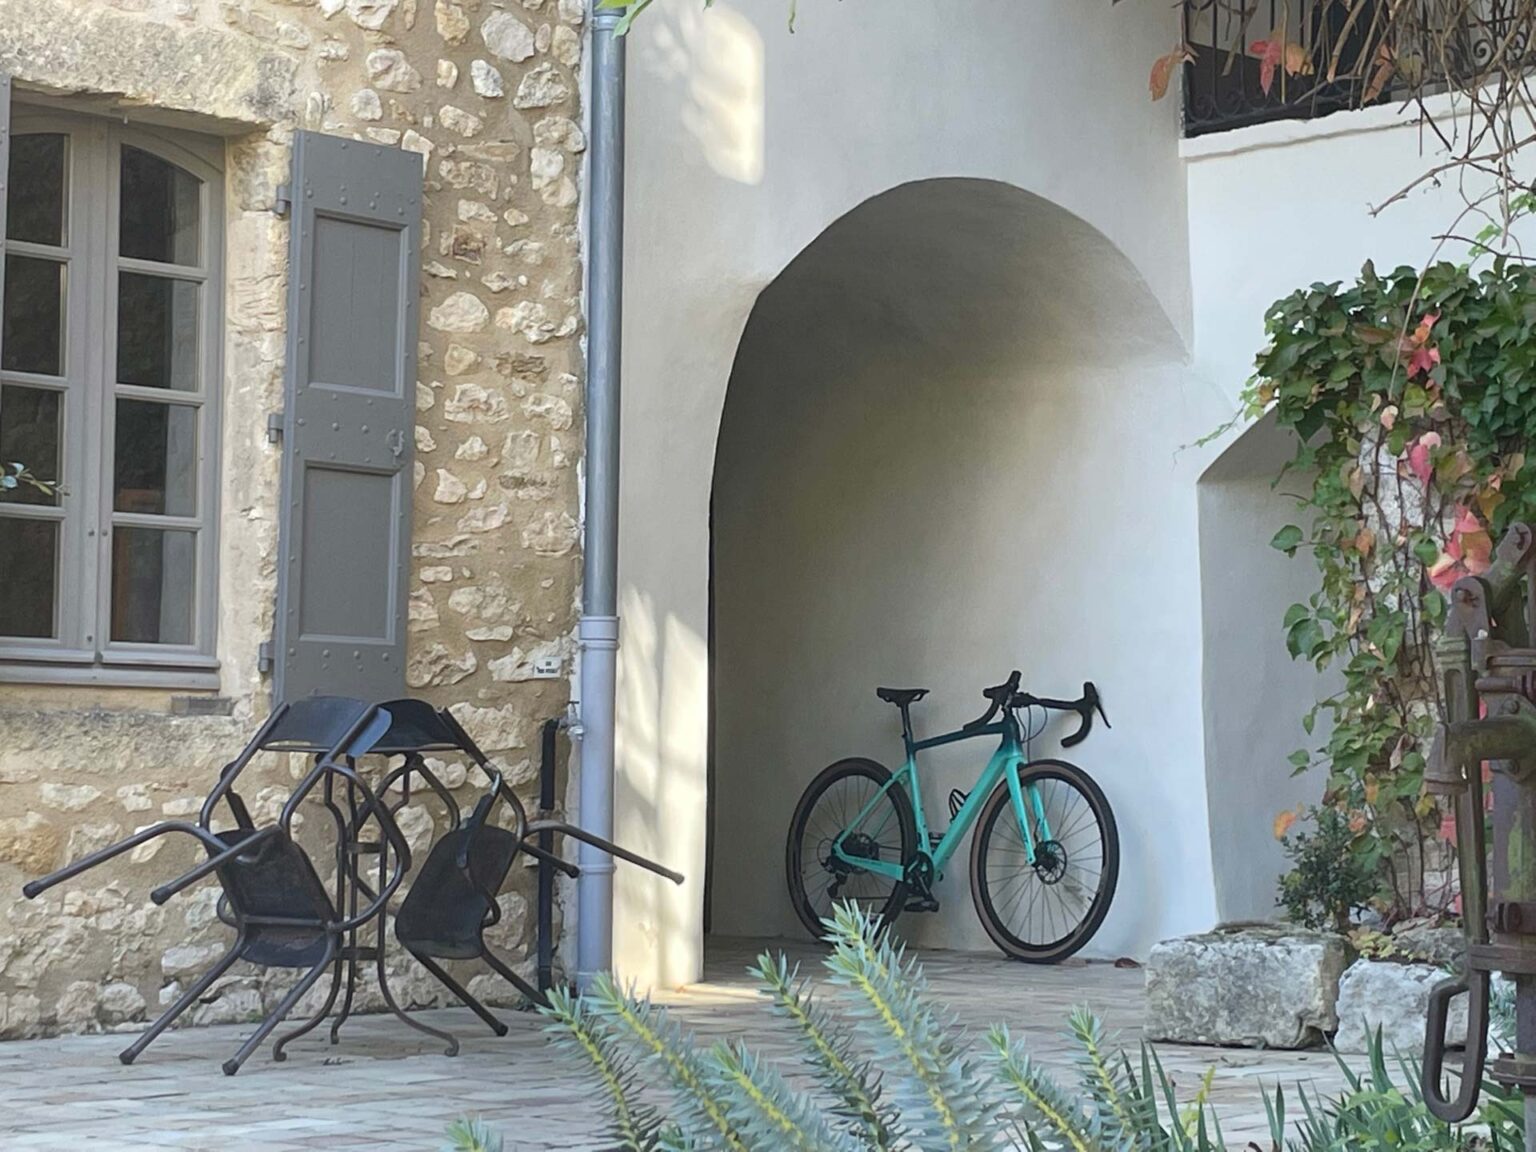 Location de vélo - Maison d'Ulysse - Mas de Charme en Provence